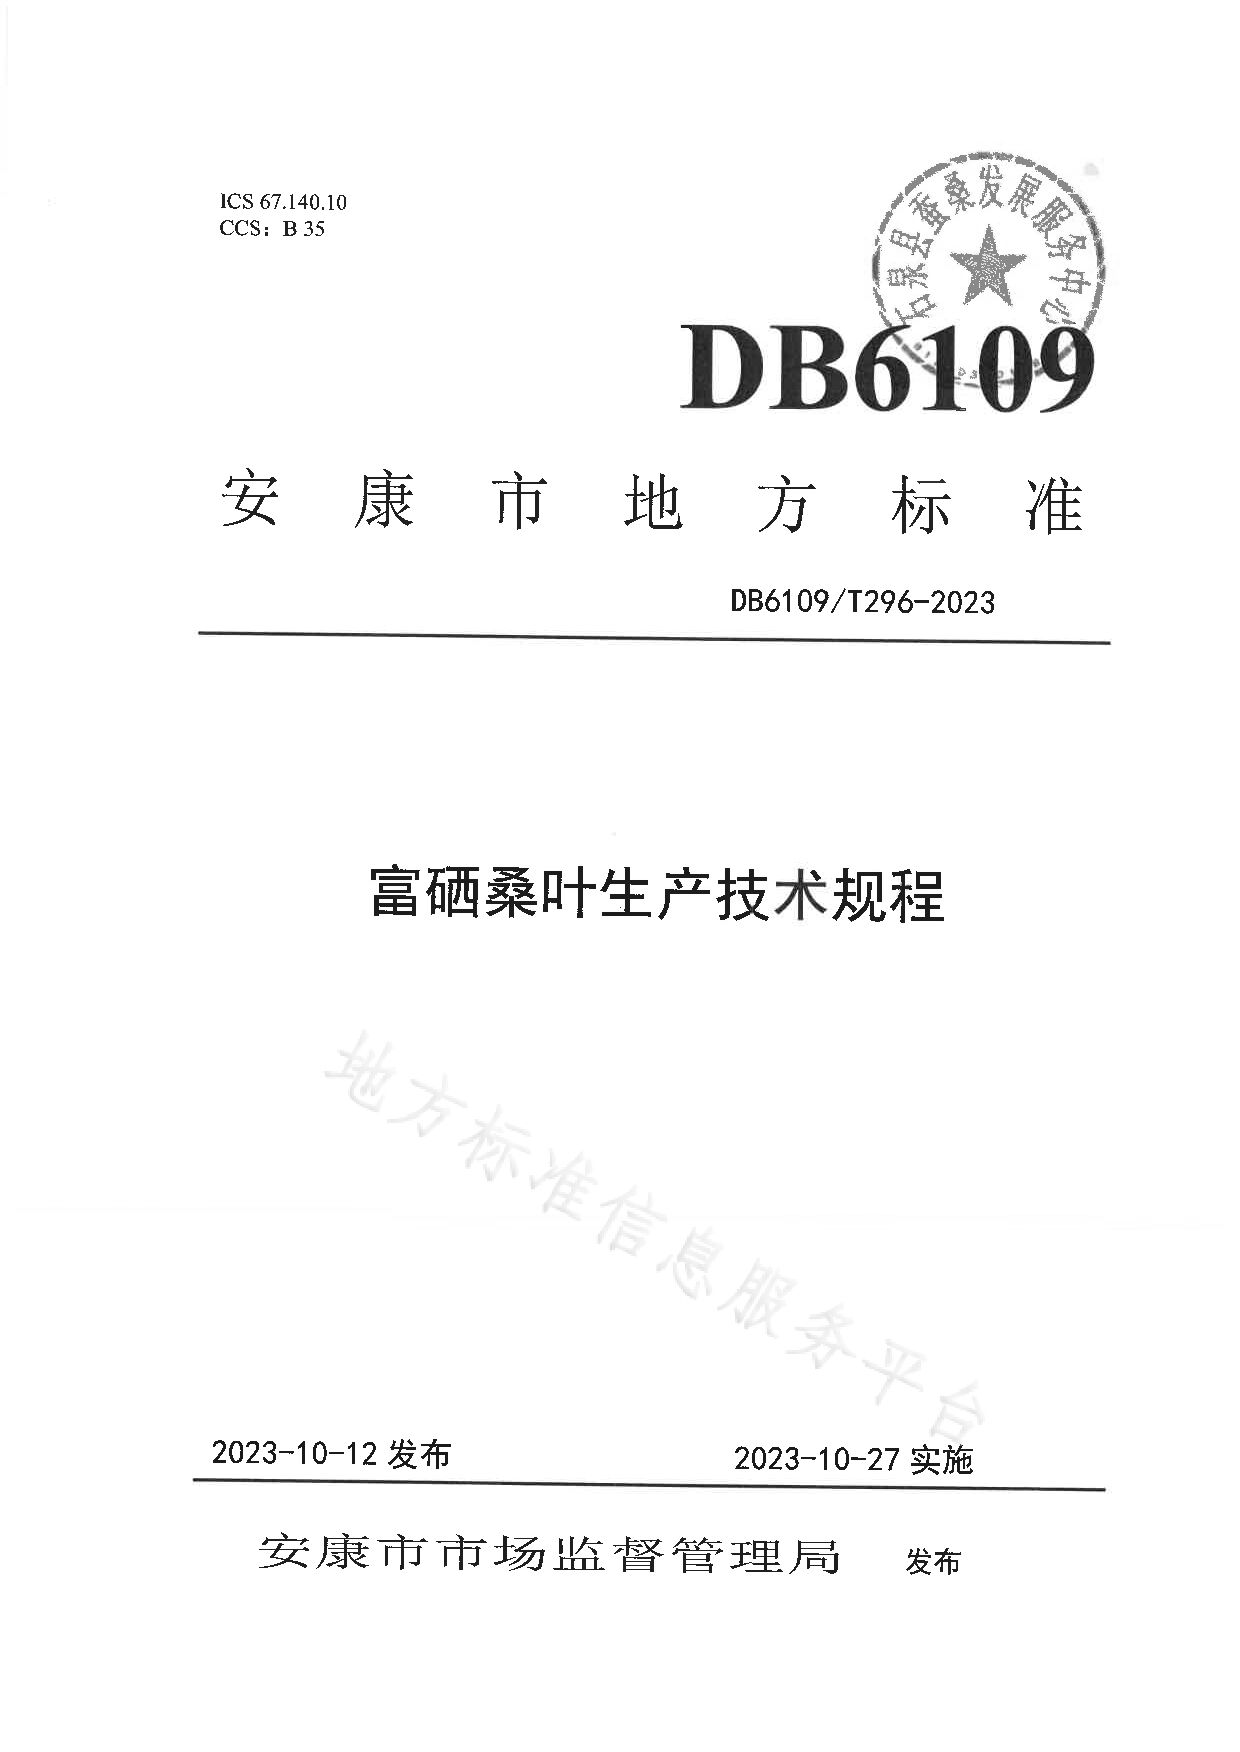 DB6109/T 296-2023封面图